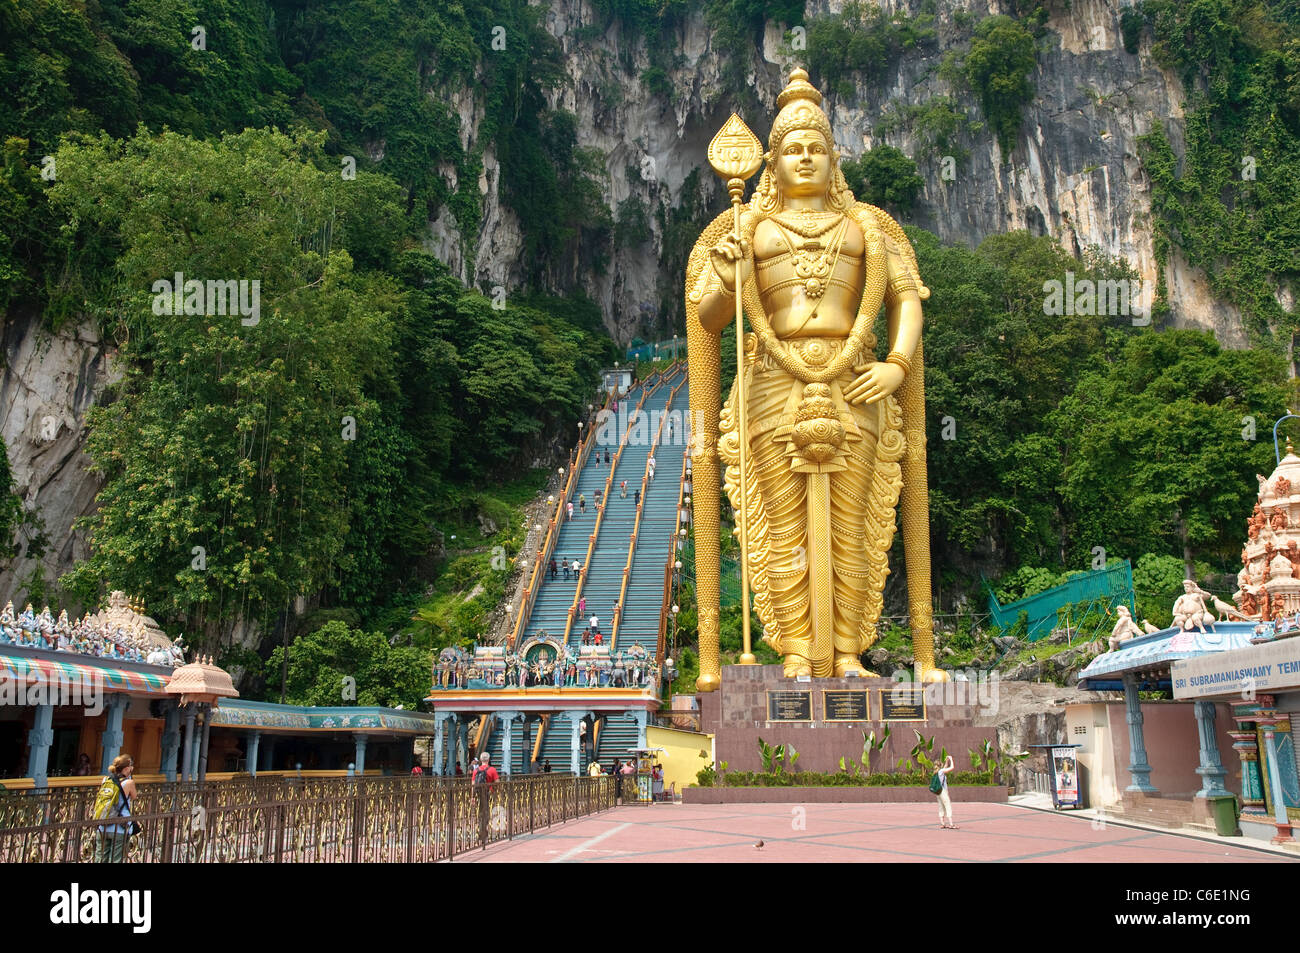 Estatua del dios Murugan en la explanada de las Cuevas Batu, cuevas de piedra caliza cerca de Kuala Lumpur, Malasia Foto de stock